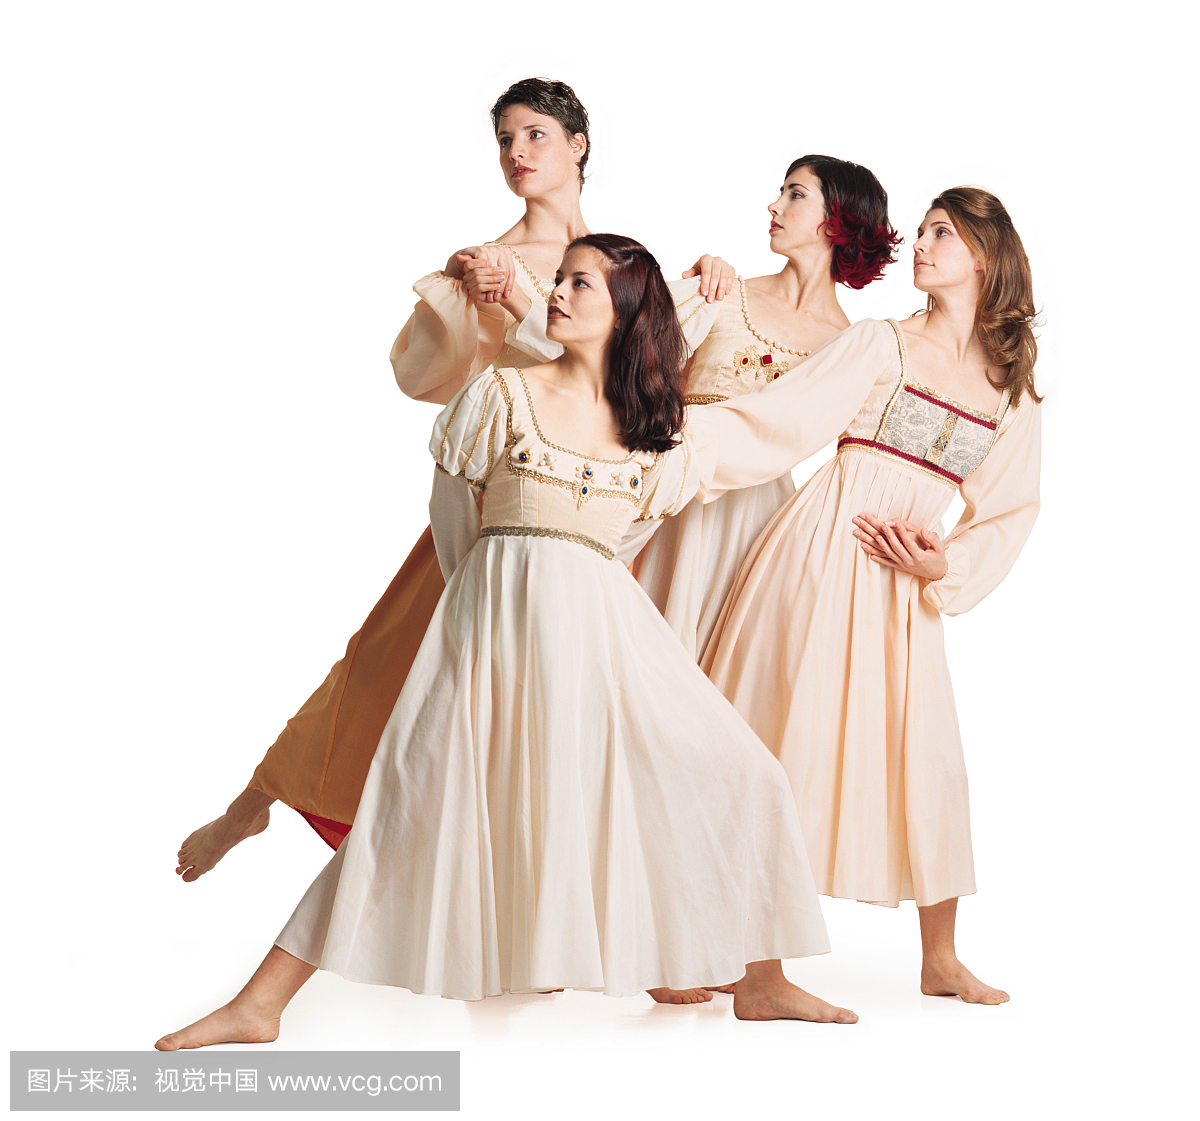 一群四名年轻白种女性舞蹈家在流动的舞蹈服装